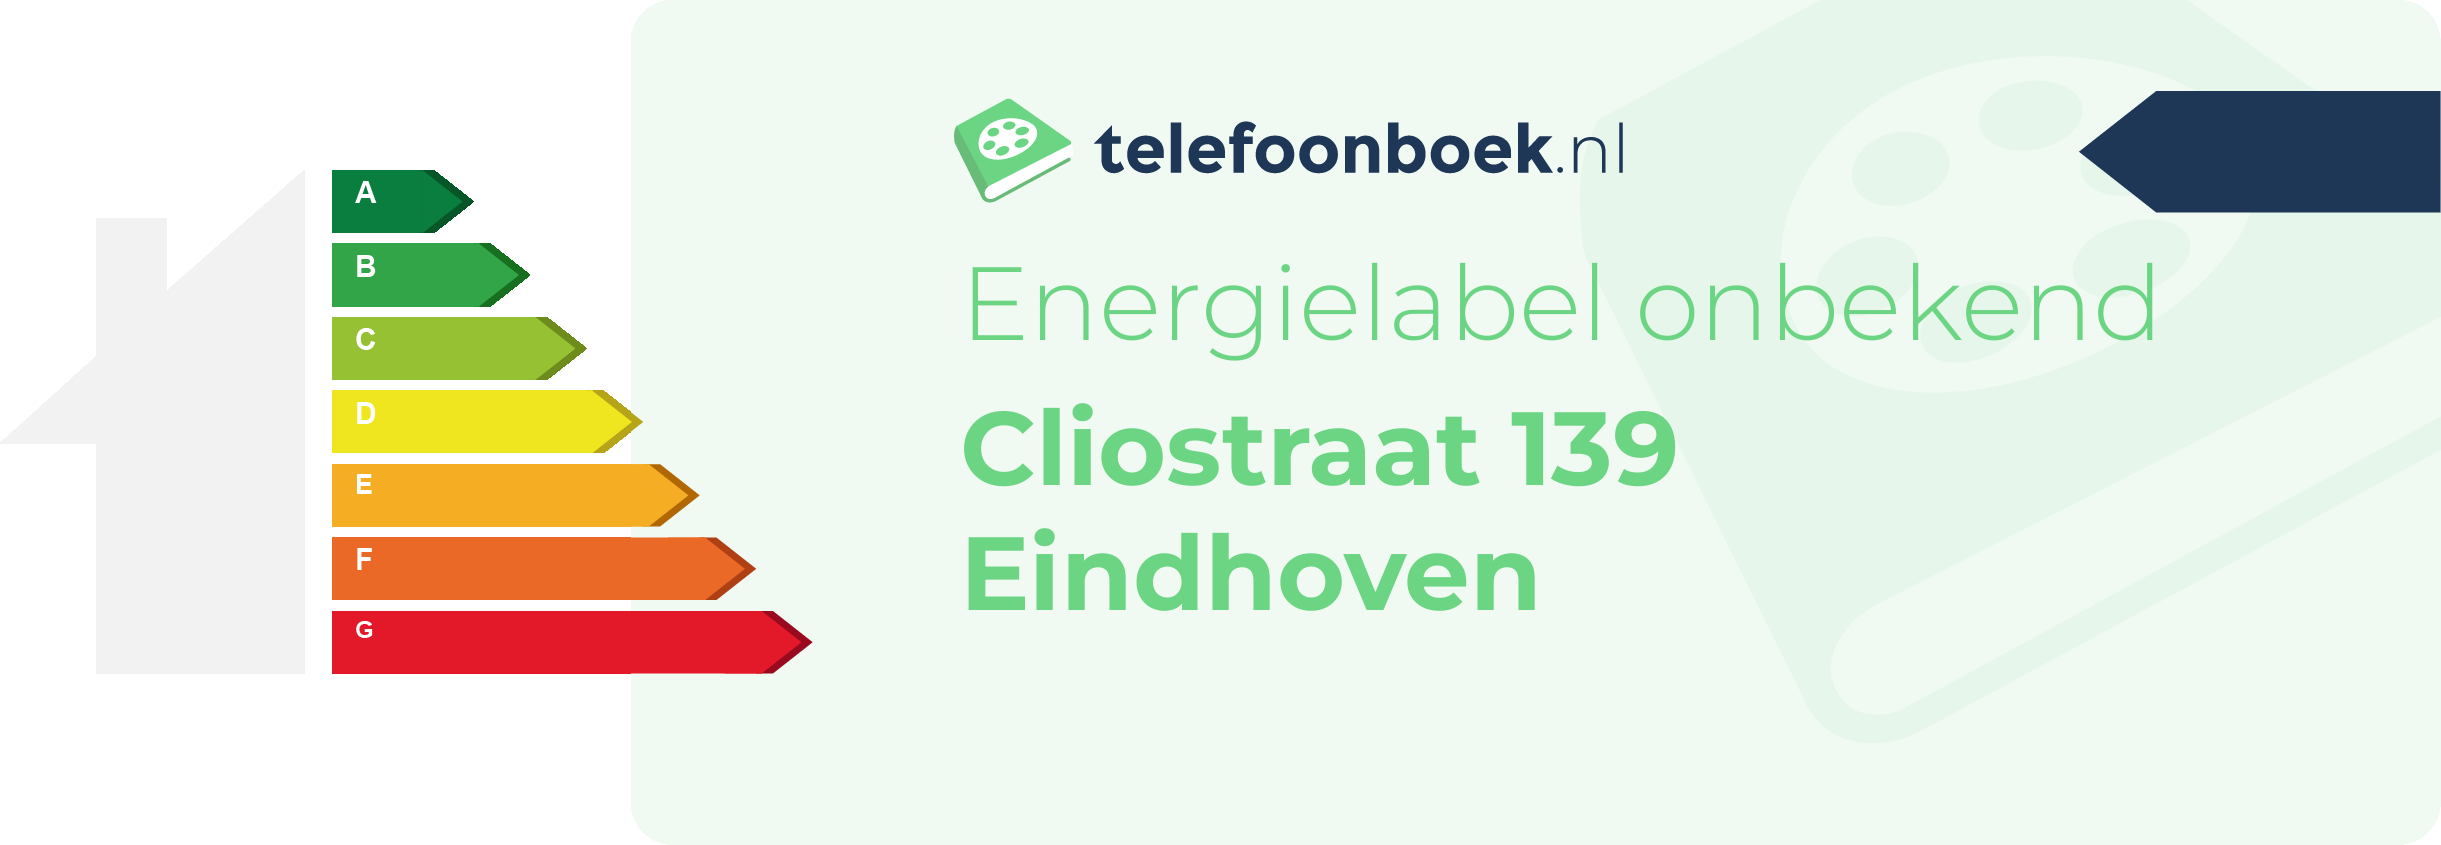 Energielabel Cliostraat 139 Eindhoven